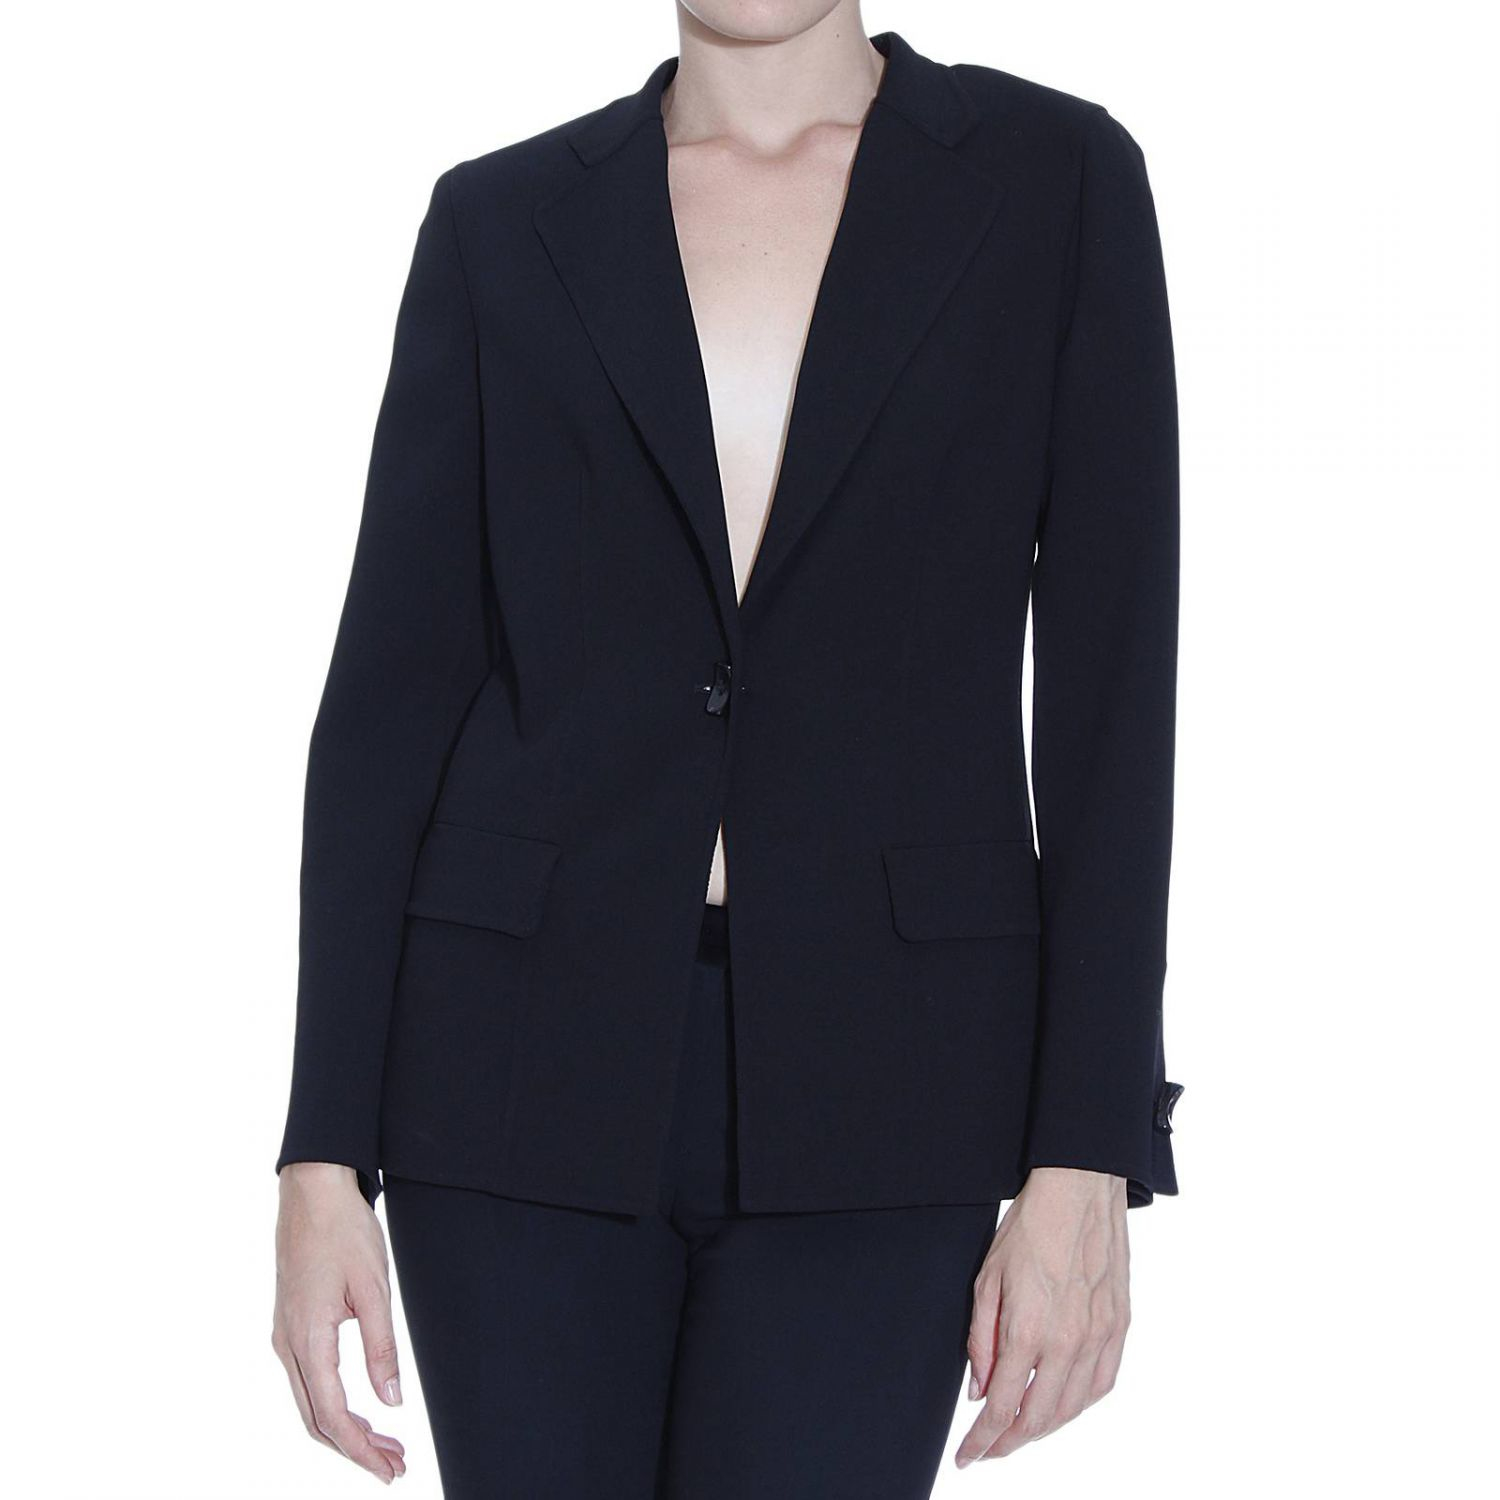 Lyst - Giorgio Armani Women's Blazer in Black